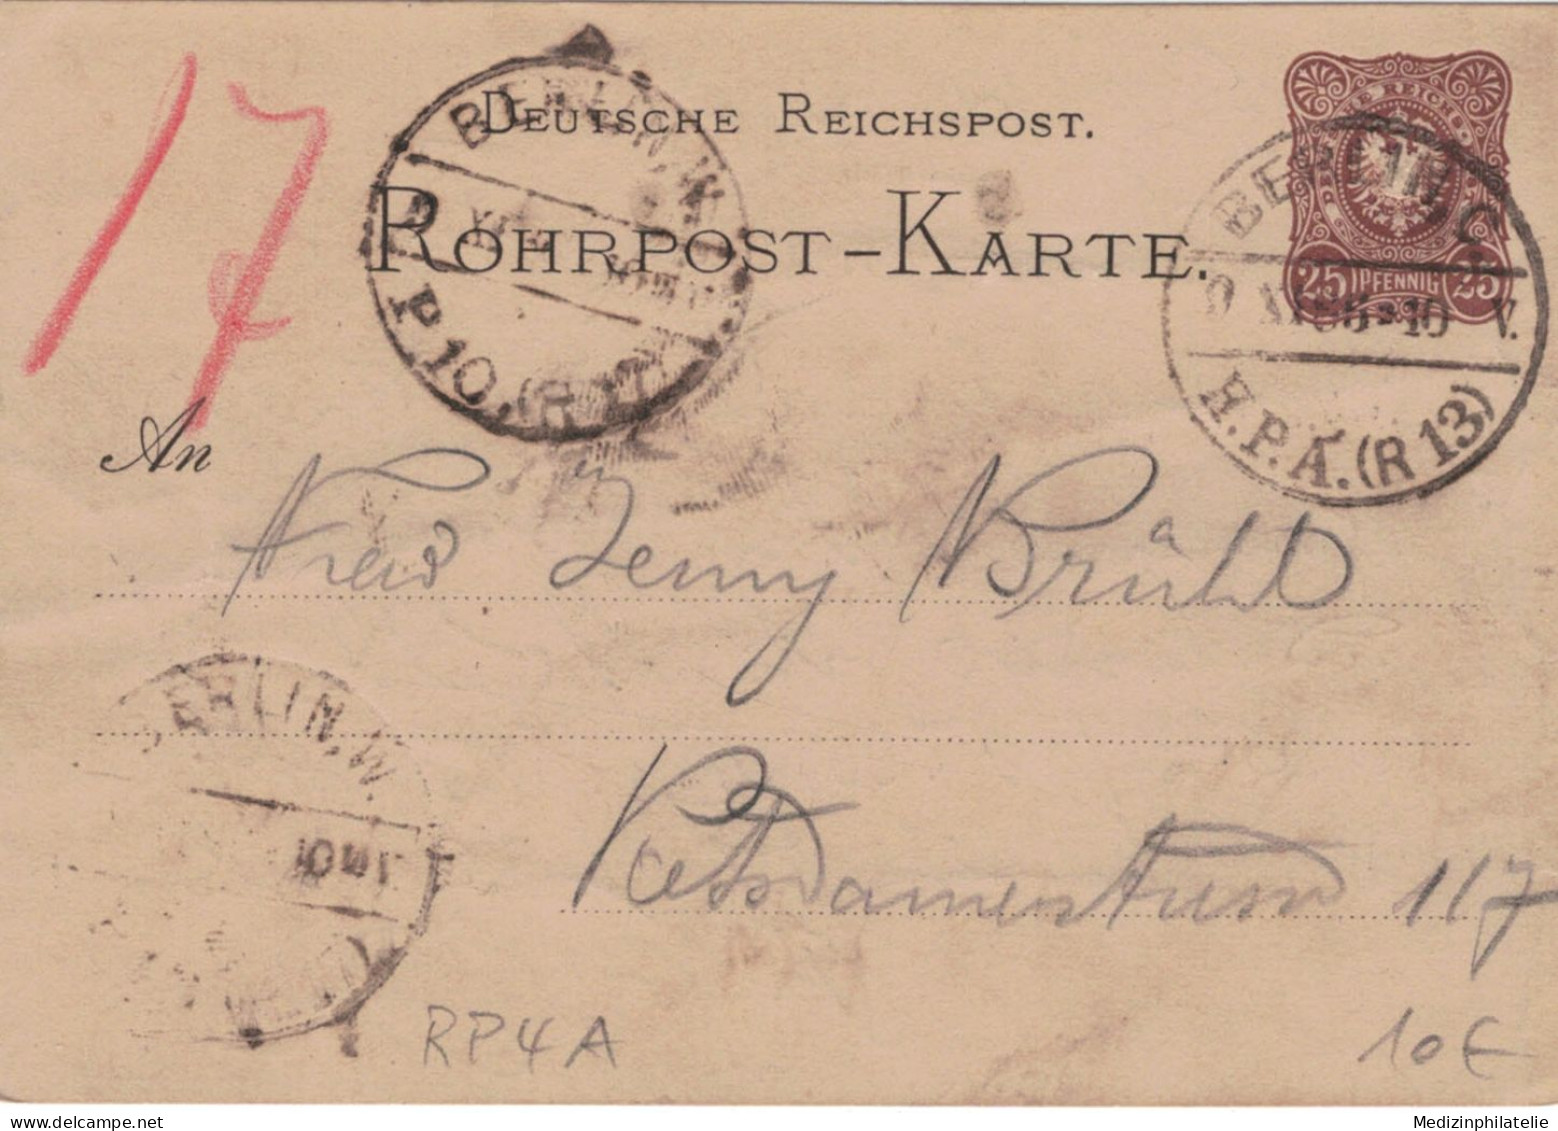 Rohrpost-Karte 25 Pf. Adler In Ellipse - 4 A - Berlin H.P.A. 1886 13 > 17 - Tarjetas